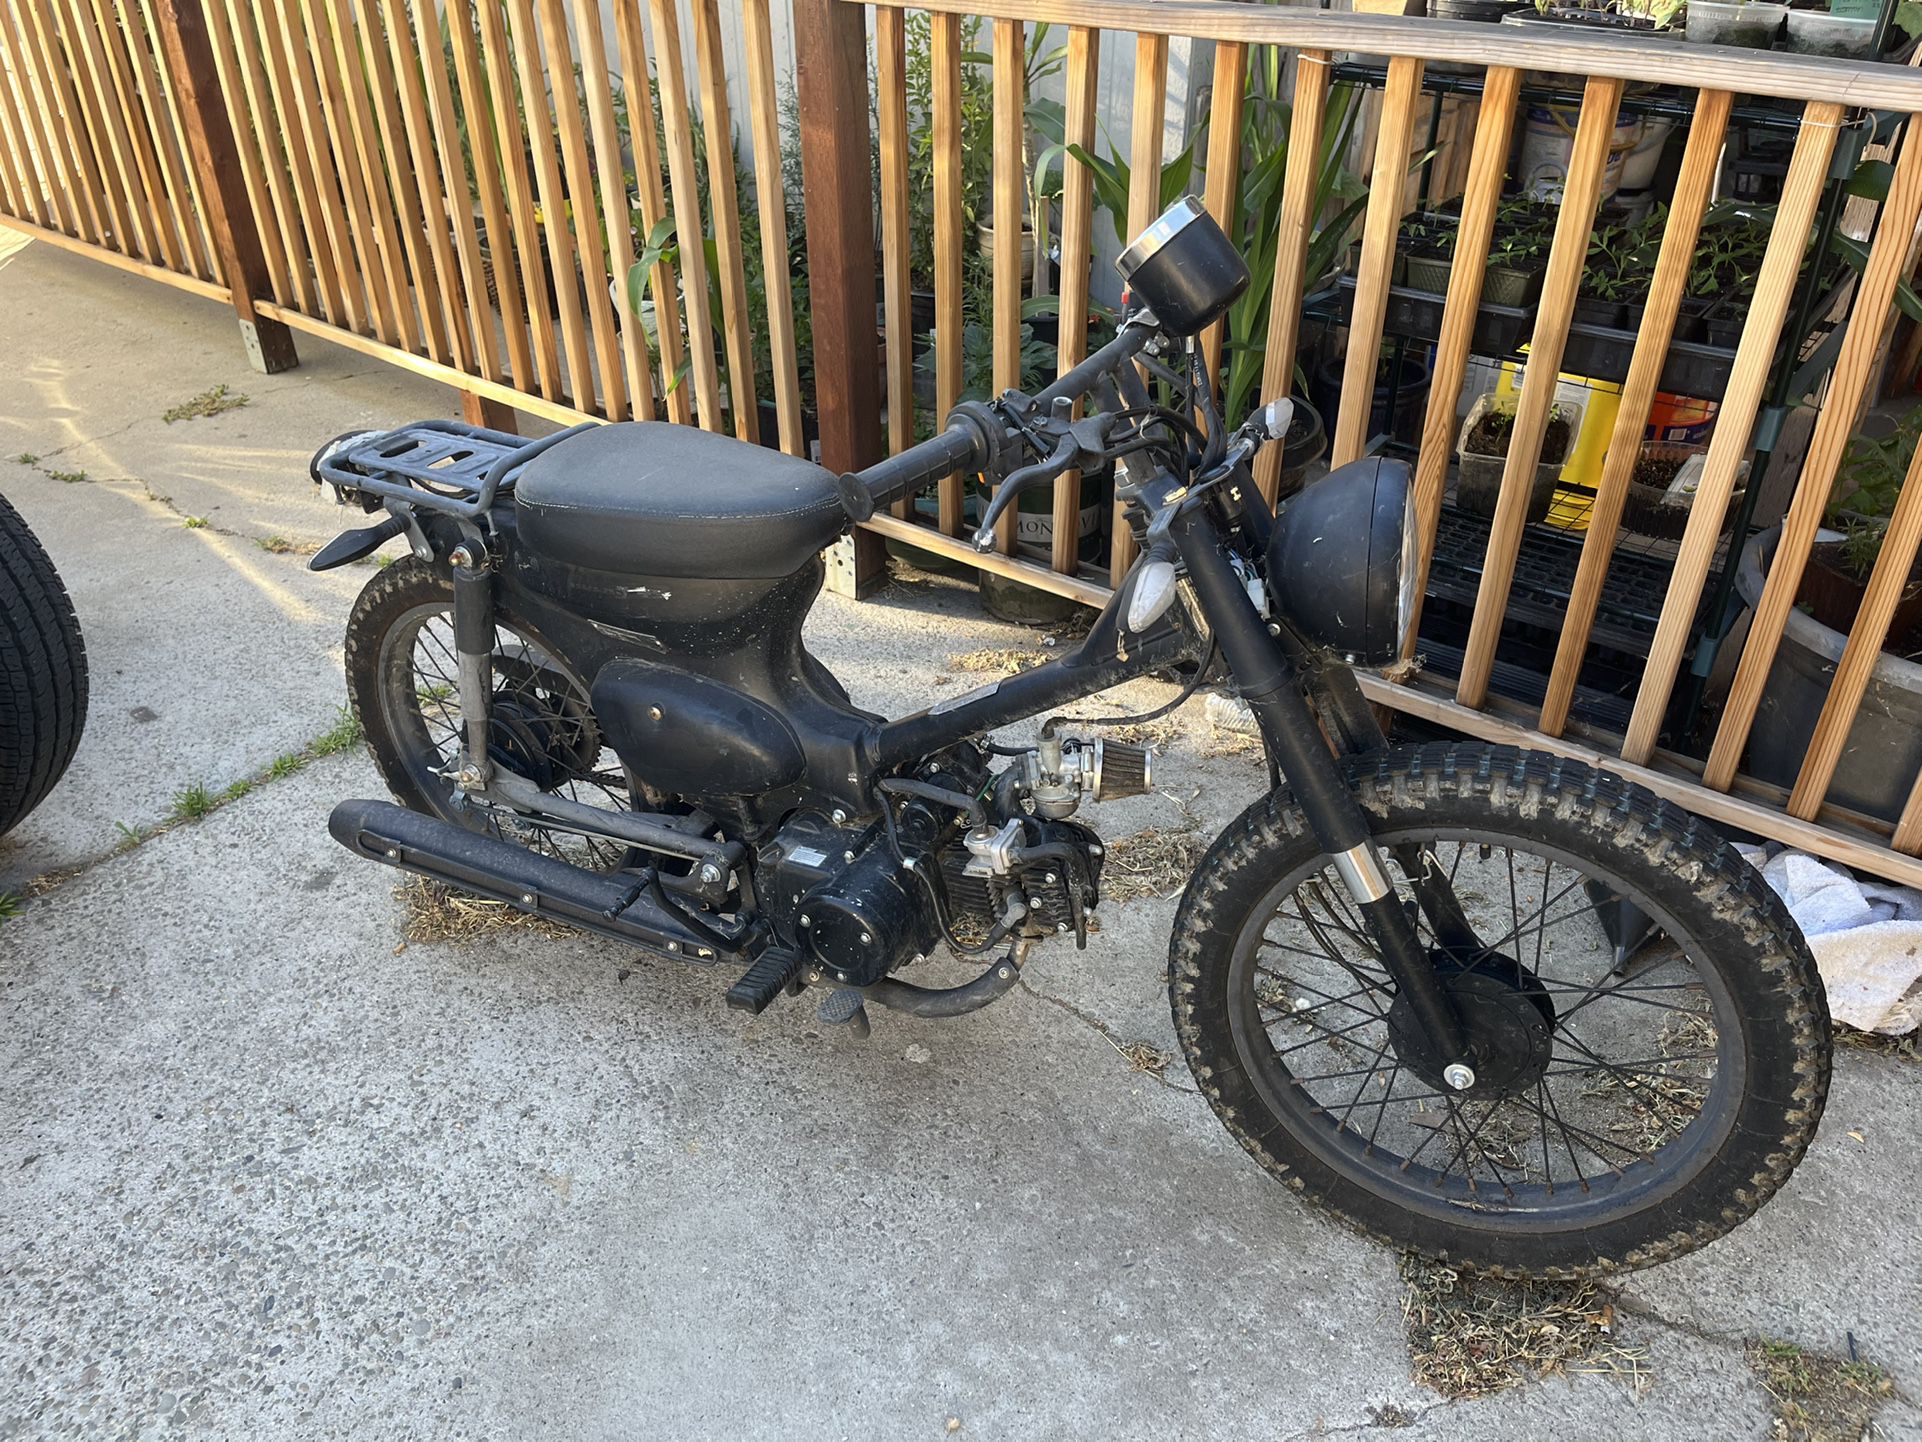 Vintage Looking 49cc Motorbike - Works But Needs Love. 